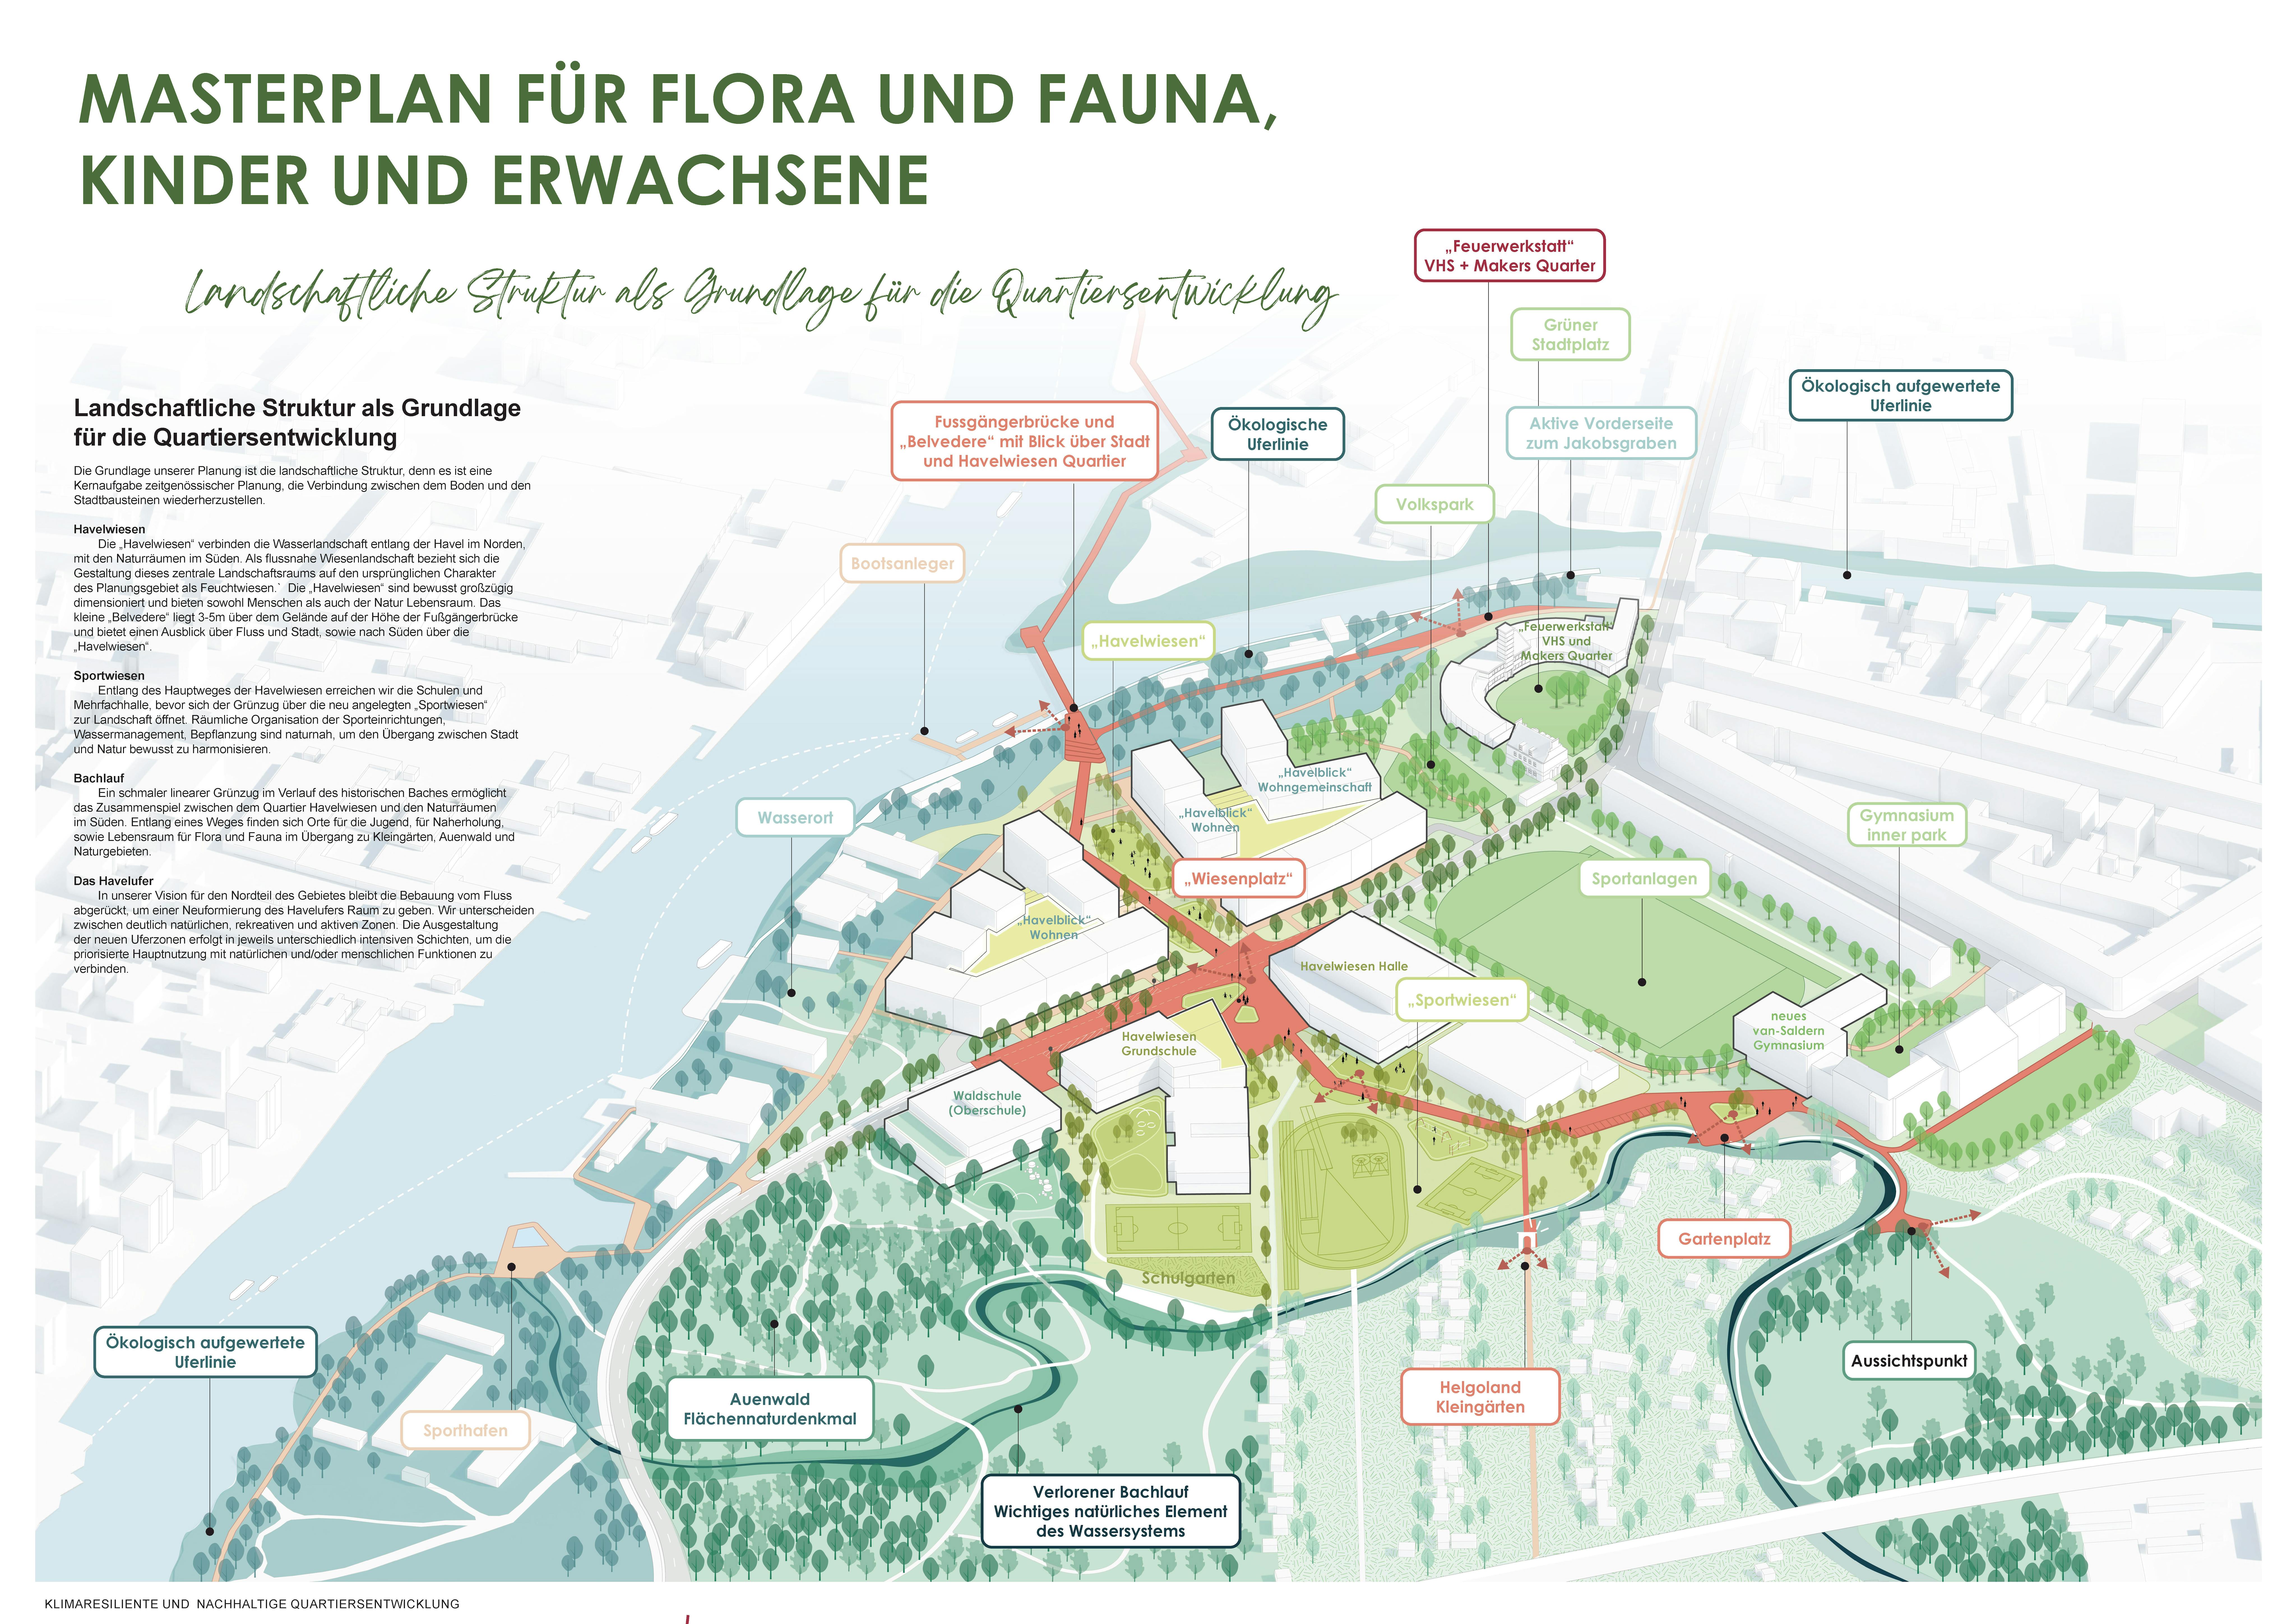 Masterplan für Flora und Fauna, Kinder und Erwachsene